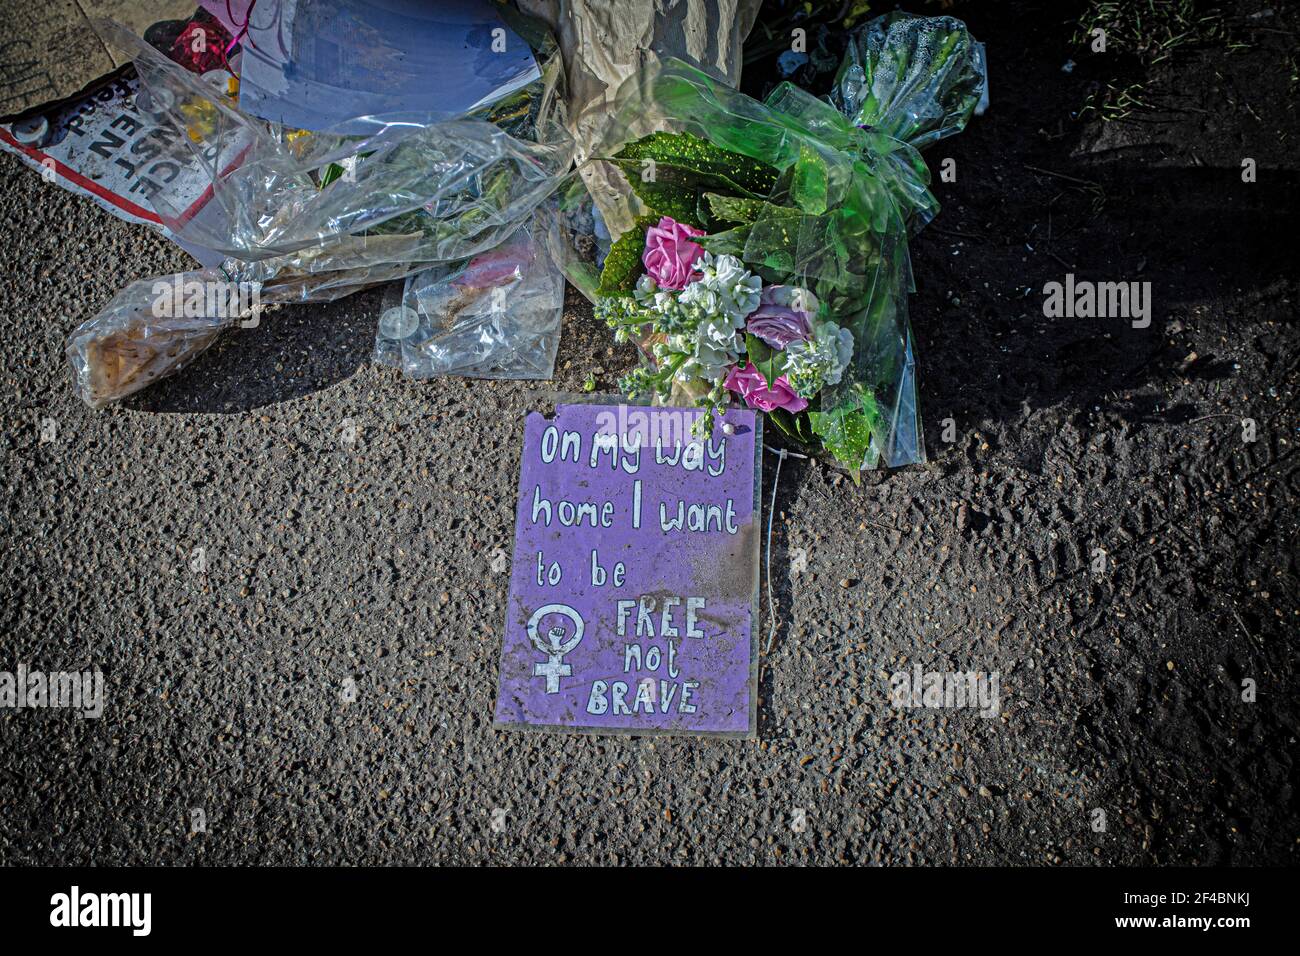 LONDRES, ANGLETERRE - MARS 19: Signe et fleurs à la mémoire de Sarah Everard sur Clapham Common, Londres UK Banque D'Images